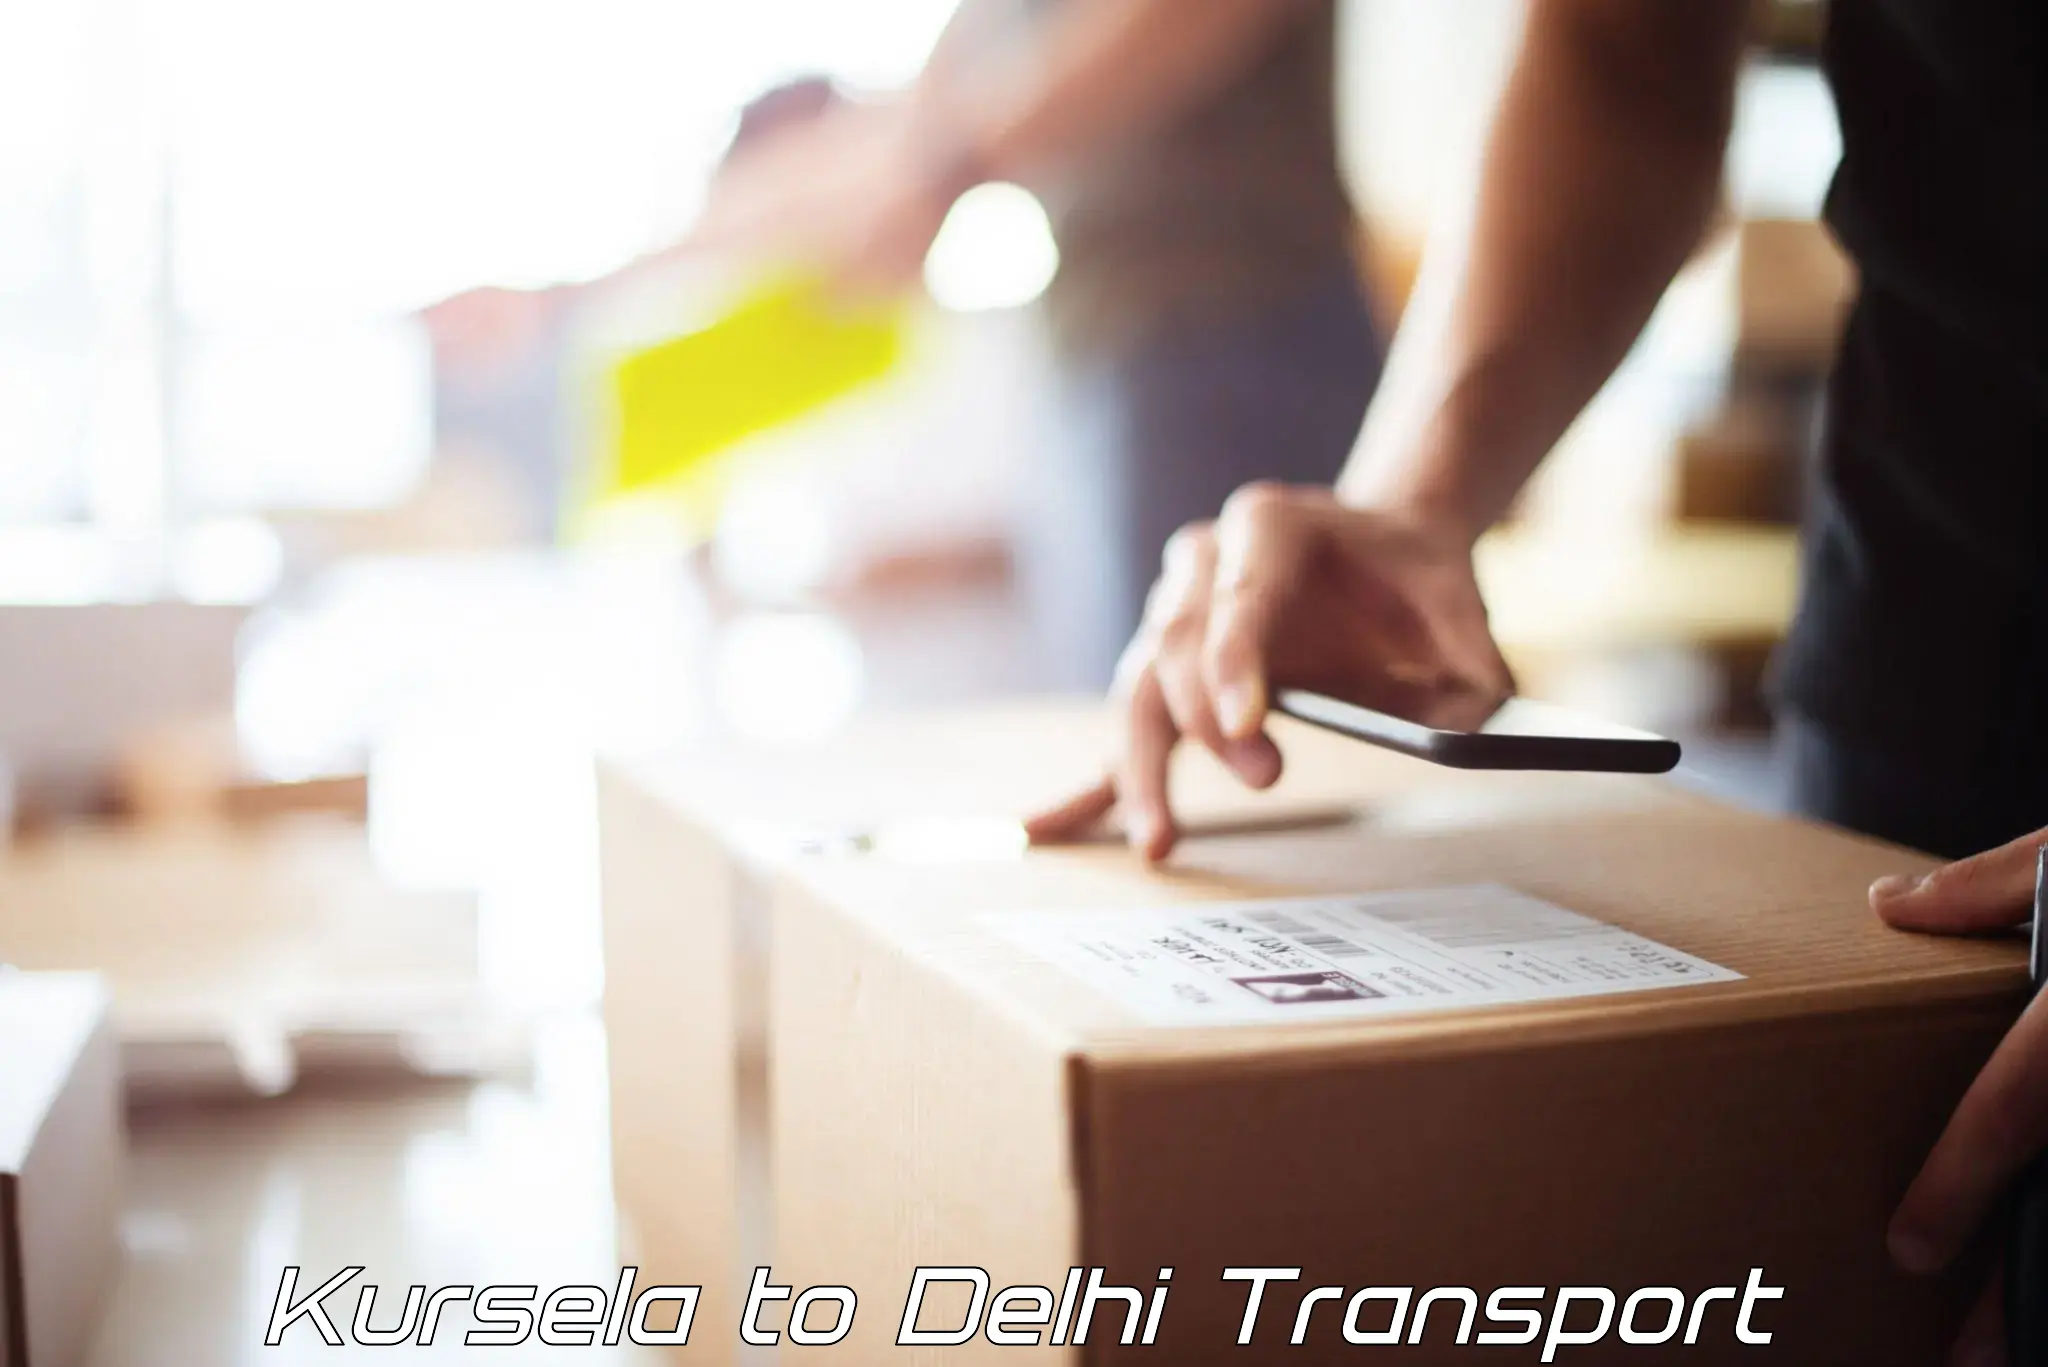 Logistics transportation services Kursela to East Delhi